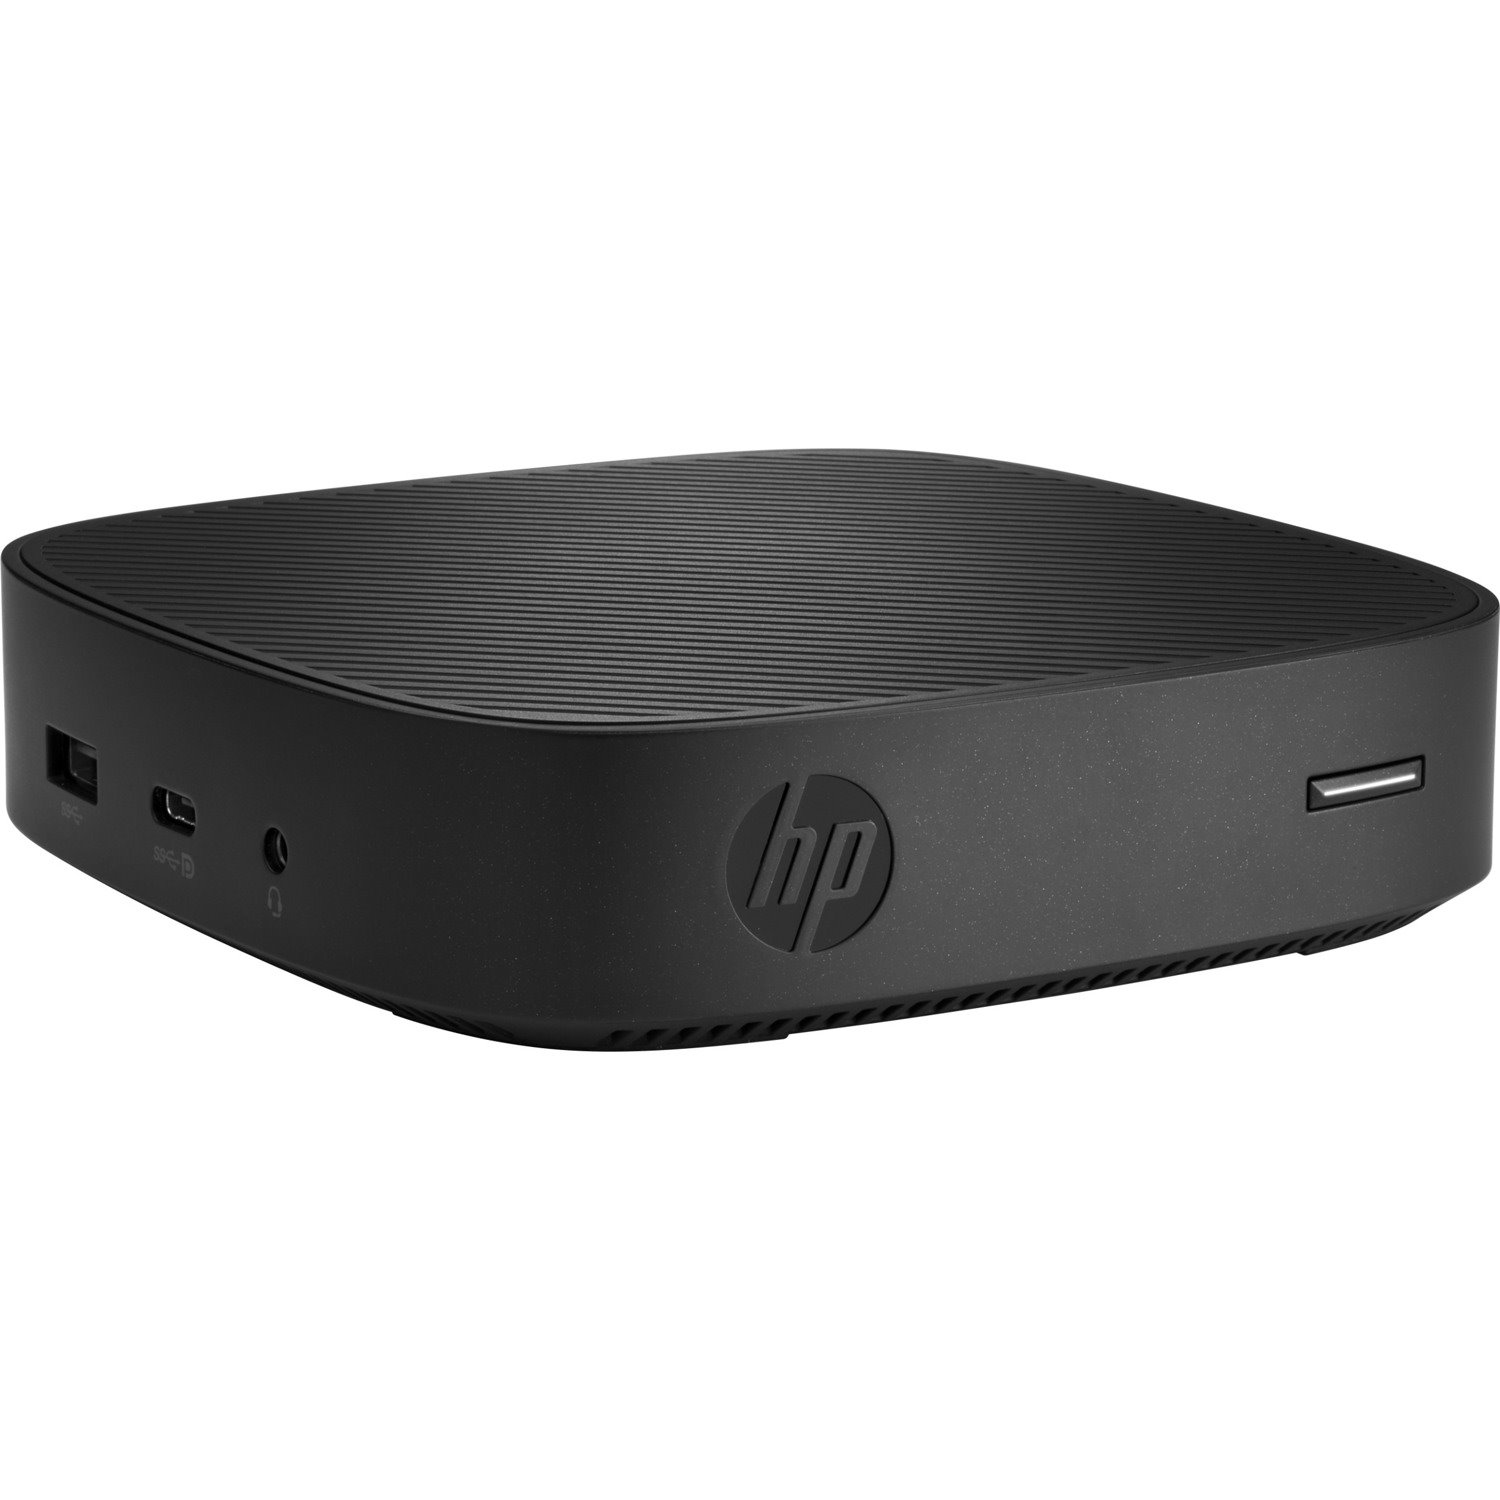 HP t430 Thin Client - Intel Celeron N4000 Dual-core (2 Core) 1.10 GHz